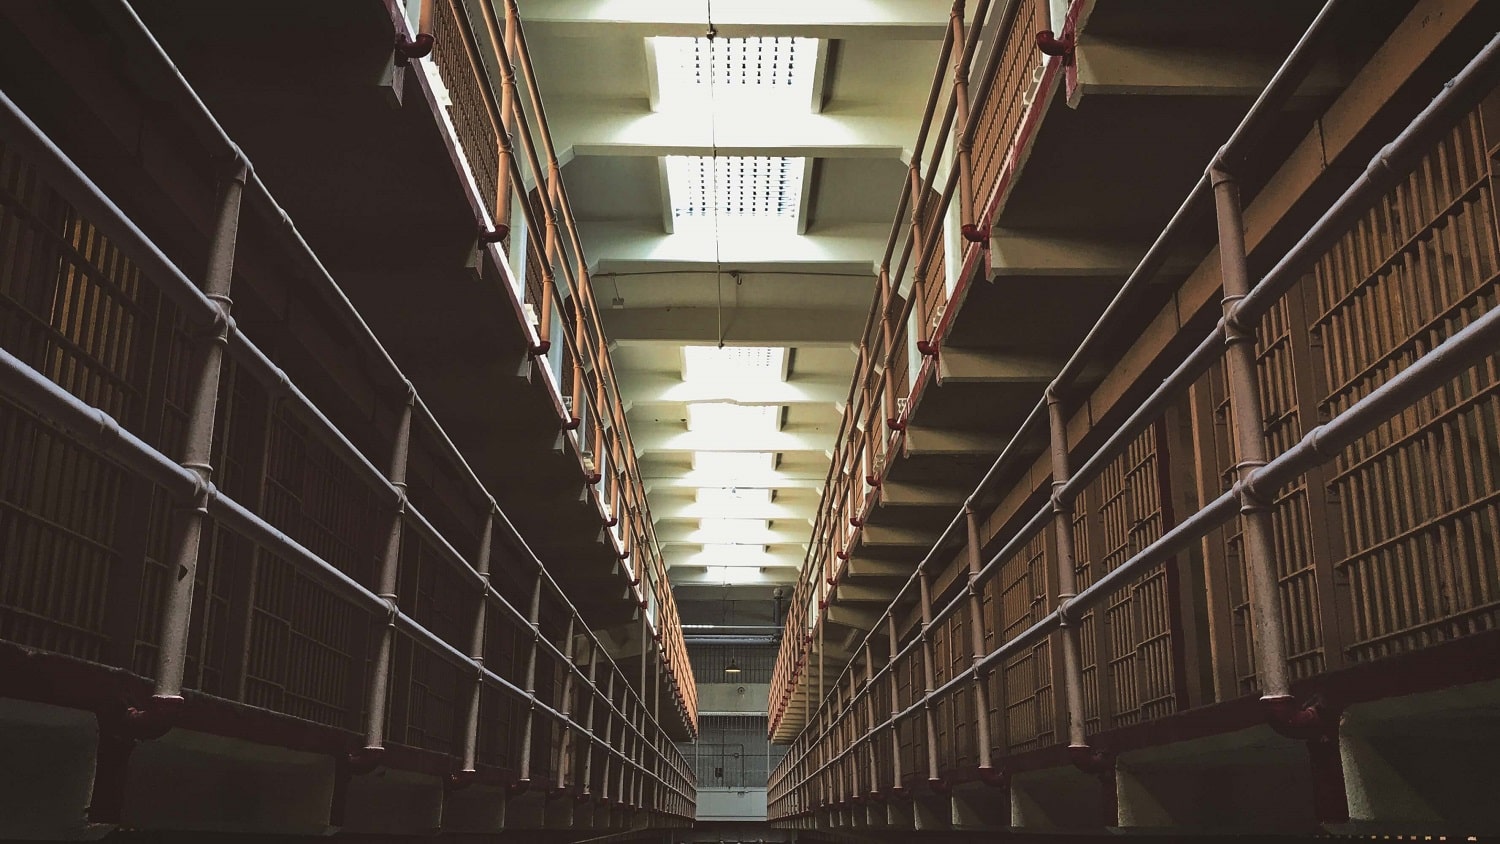 Der Gefängnistrakt im Film: Ein Gang, der durch Gefängniszellen führt